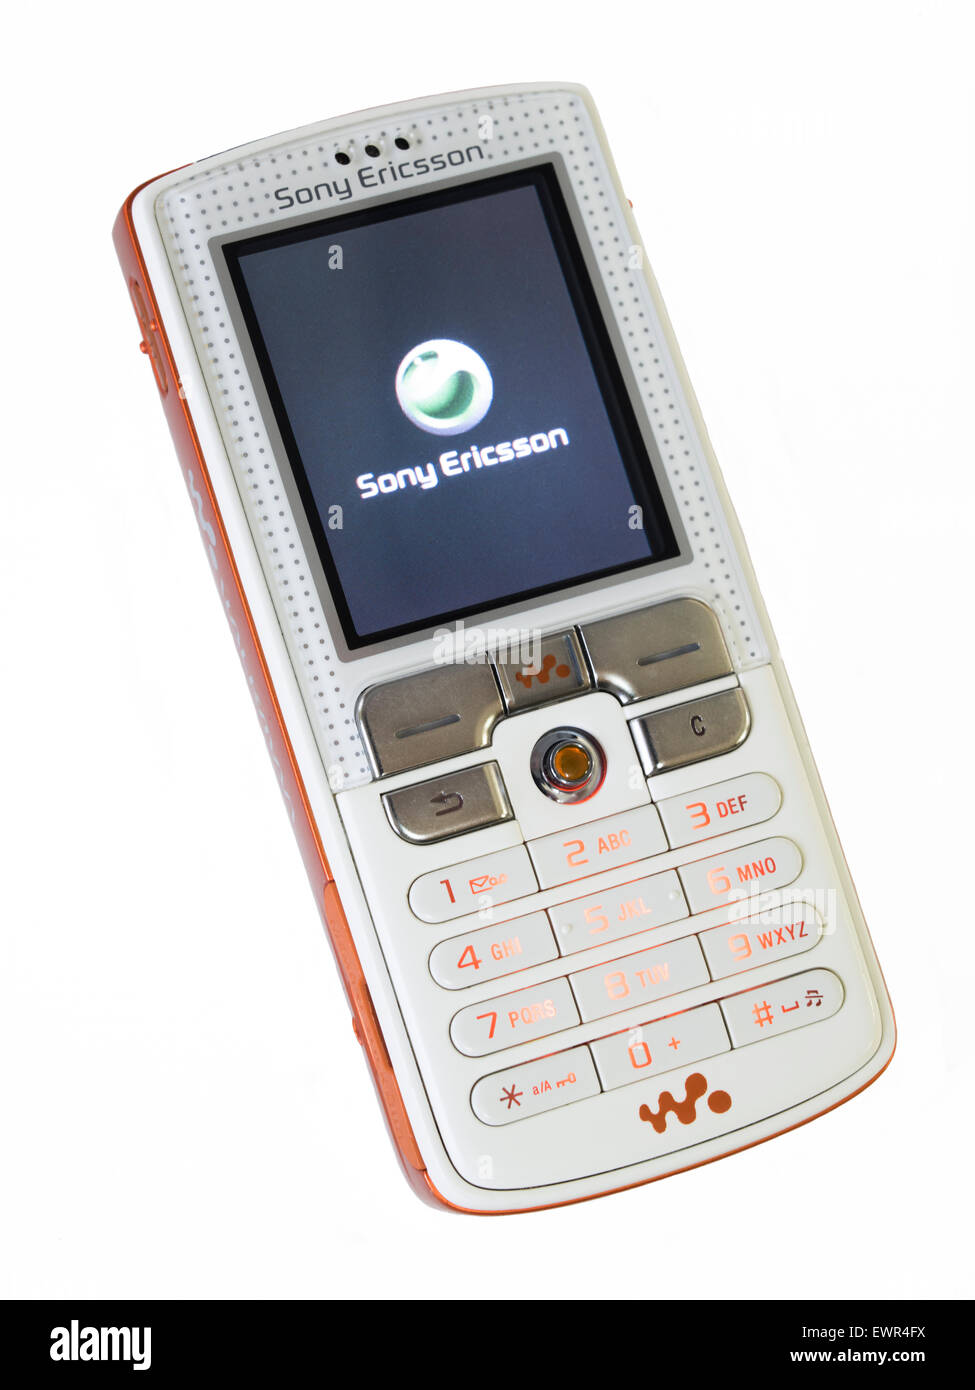 Sony Ericsson W800 Walkman téléphone mobile, publié en 2005 Banque D'Images